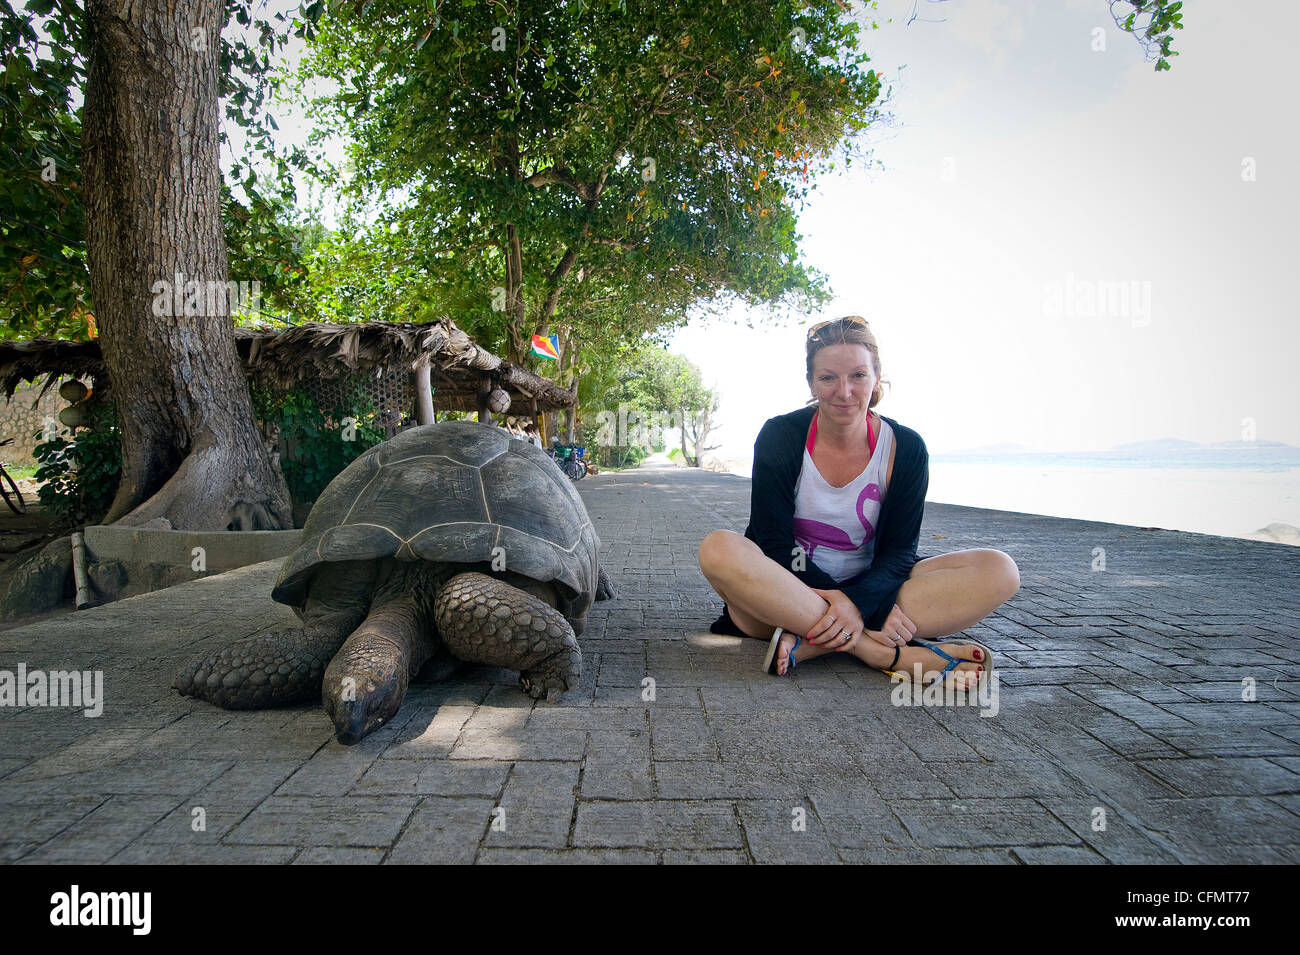 Seychellen, LA DIGUE ISLAND ist einer der beliebtesten Orte für Touristen wegen seiner schönen Strände und berühmte Schildkröten... Stockfoto